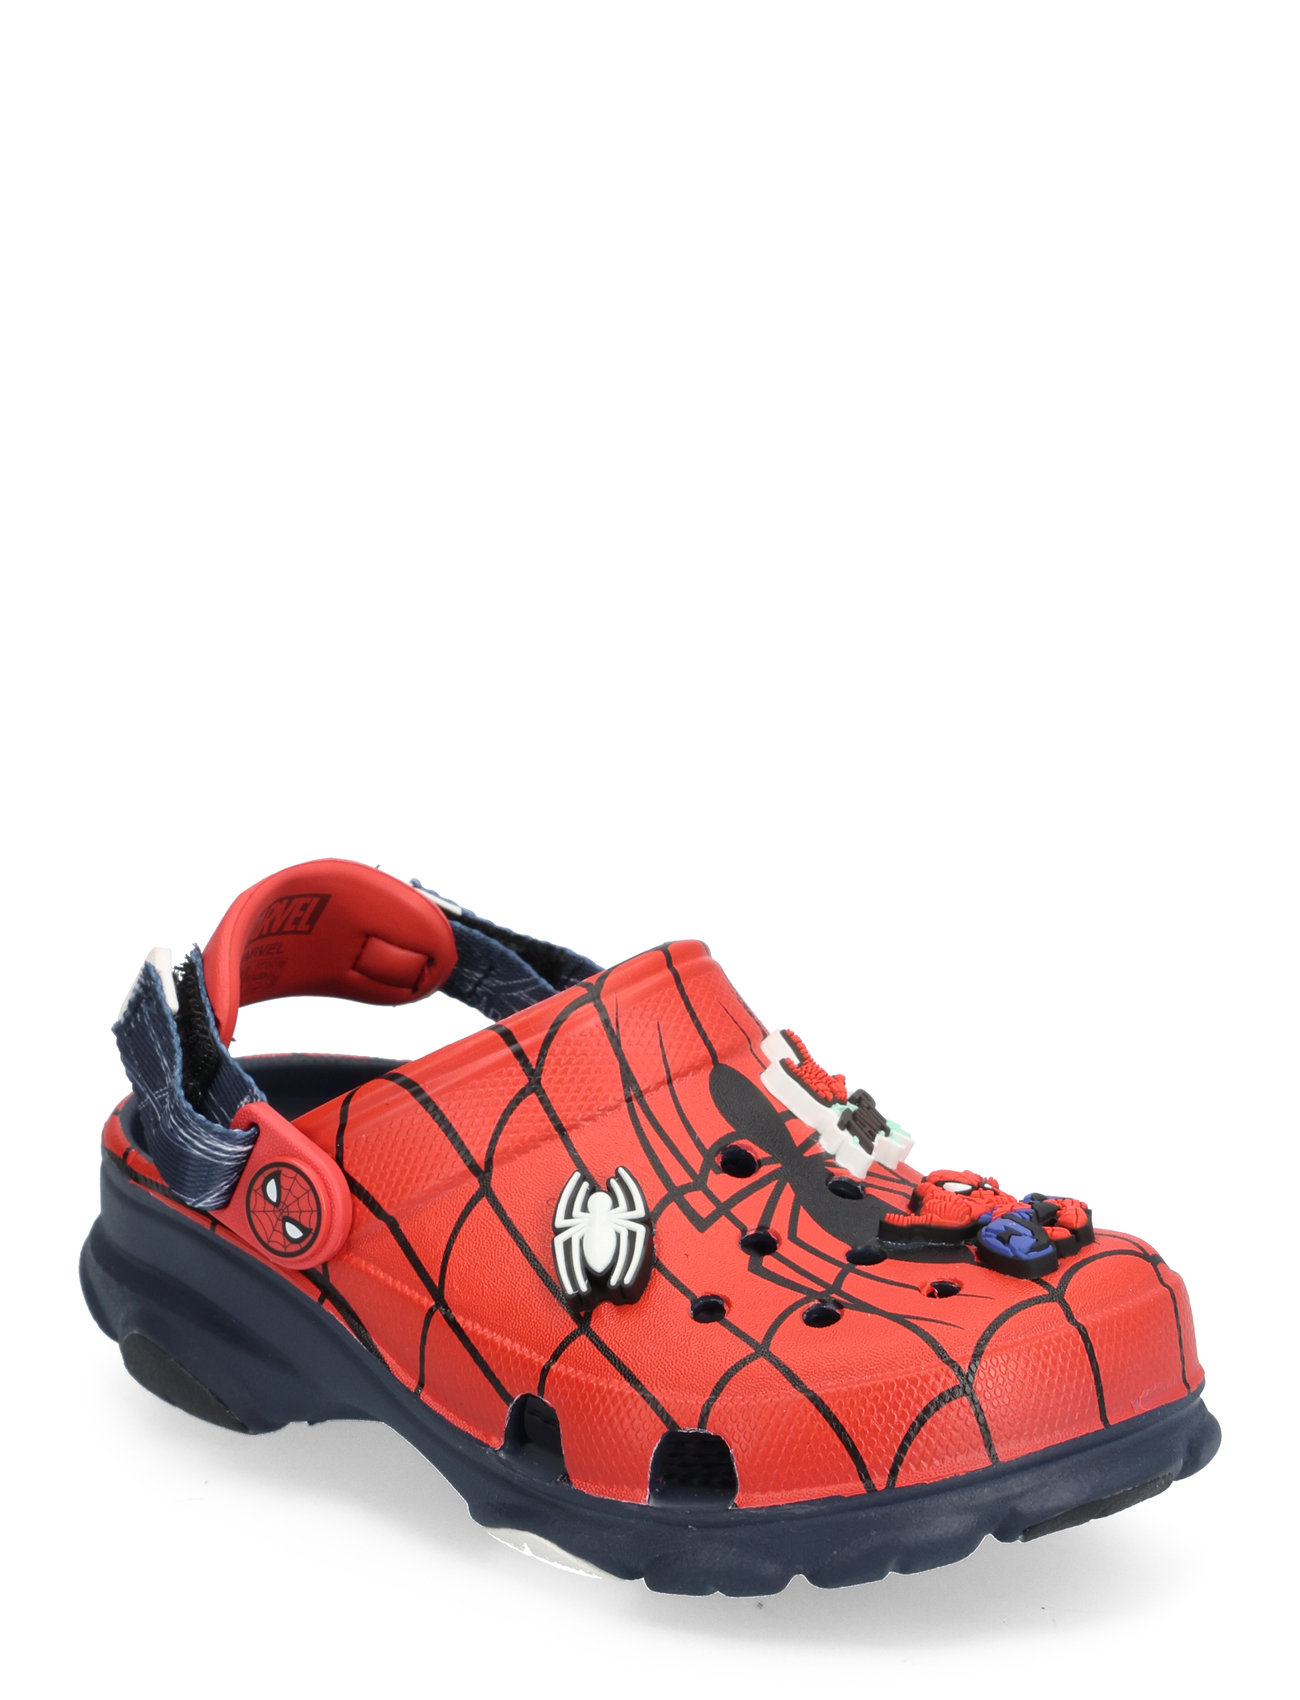 Crocs "Spider-Man All Terrain Clog K Shoes Clogs Red Crocs"